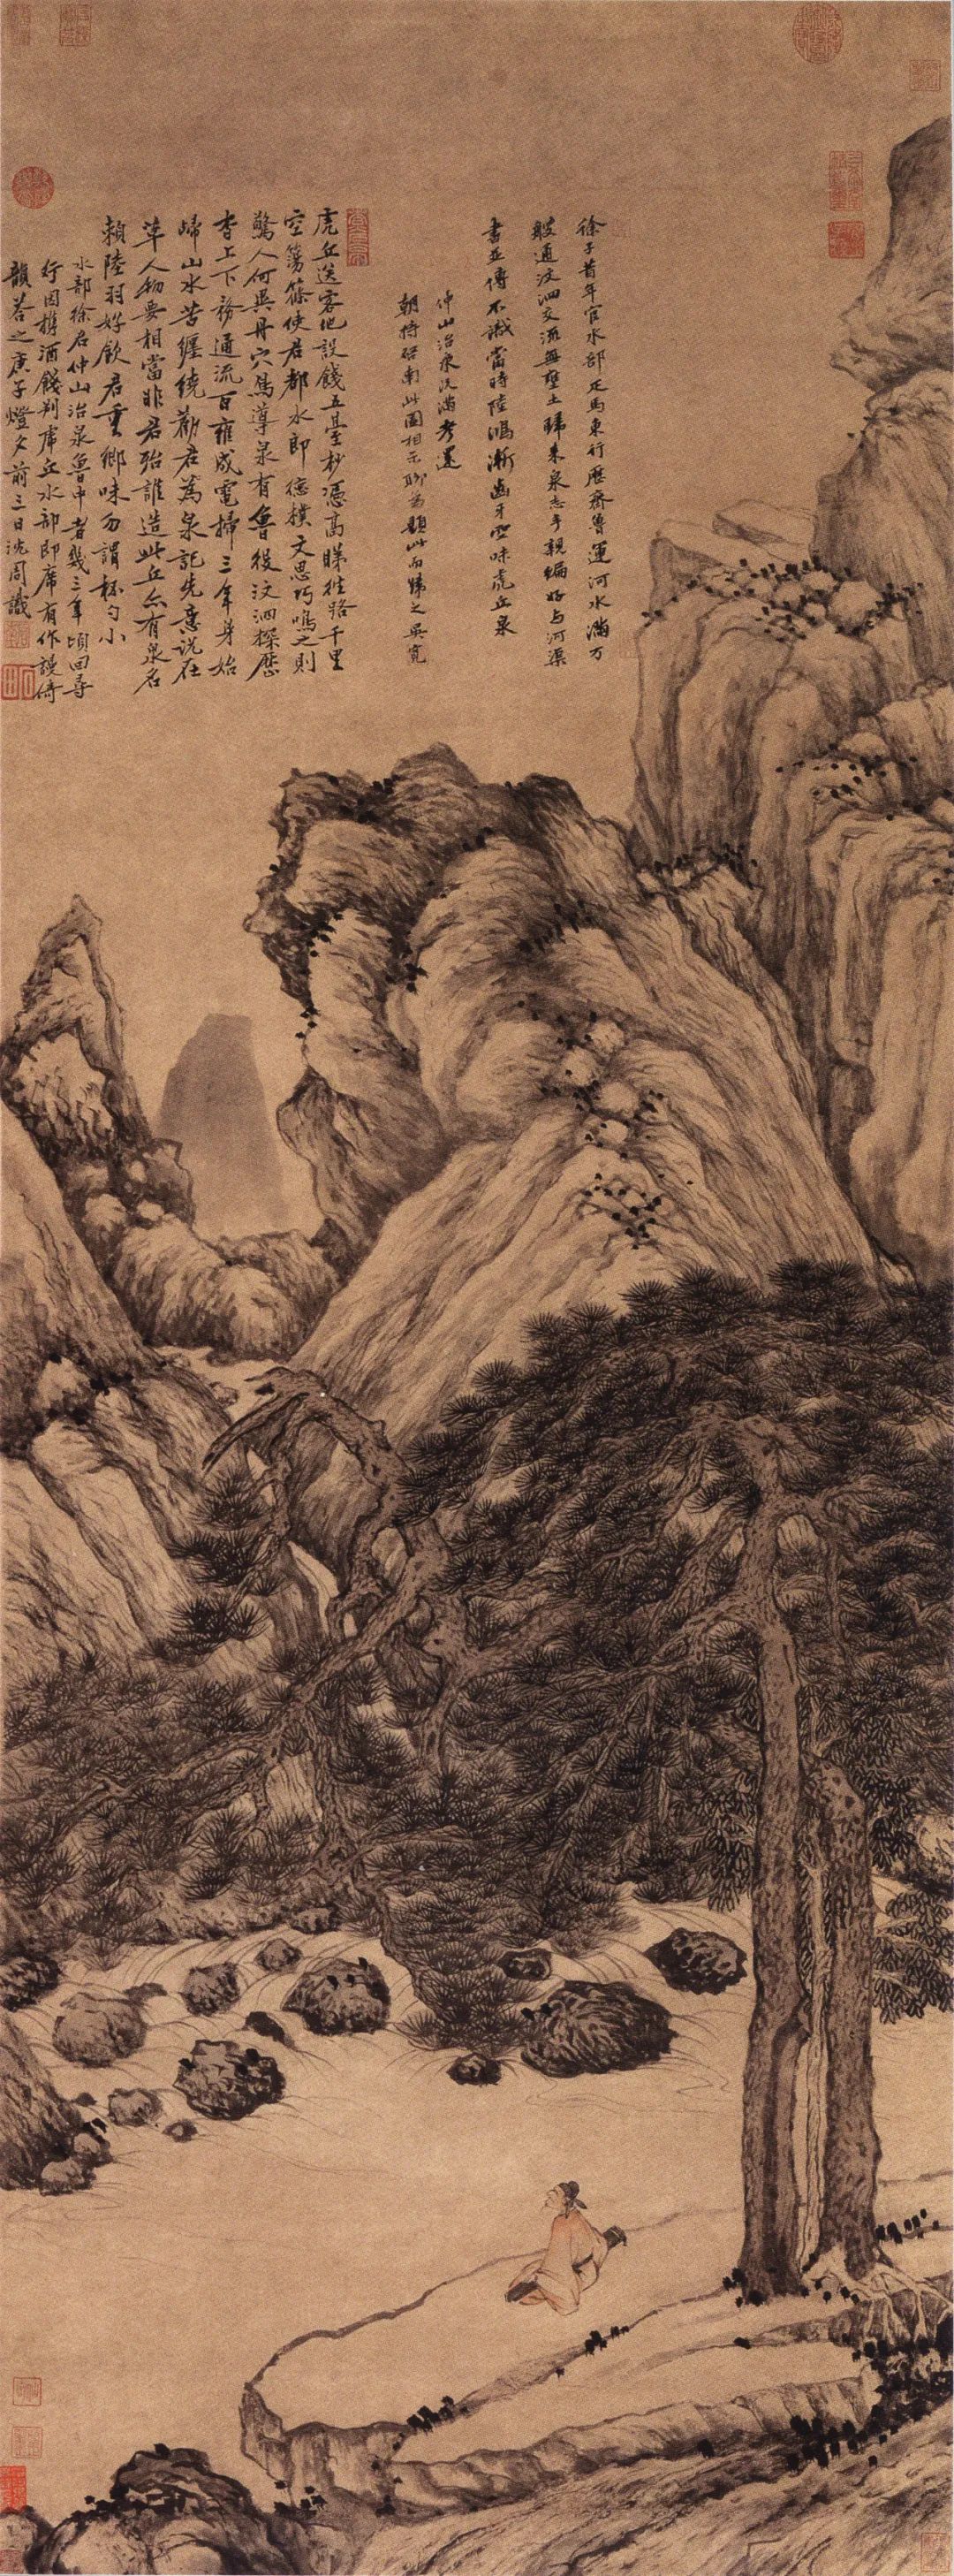 明 沈周《虎丘观泉图》（现定名《虎丘送客图》），天津博物馆藏